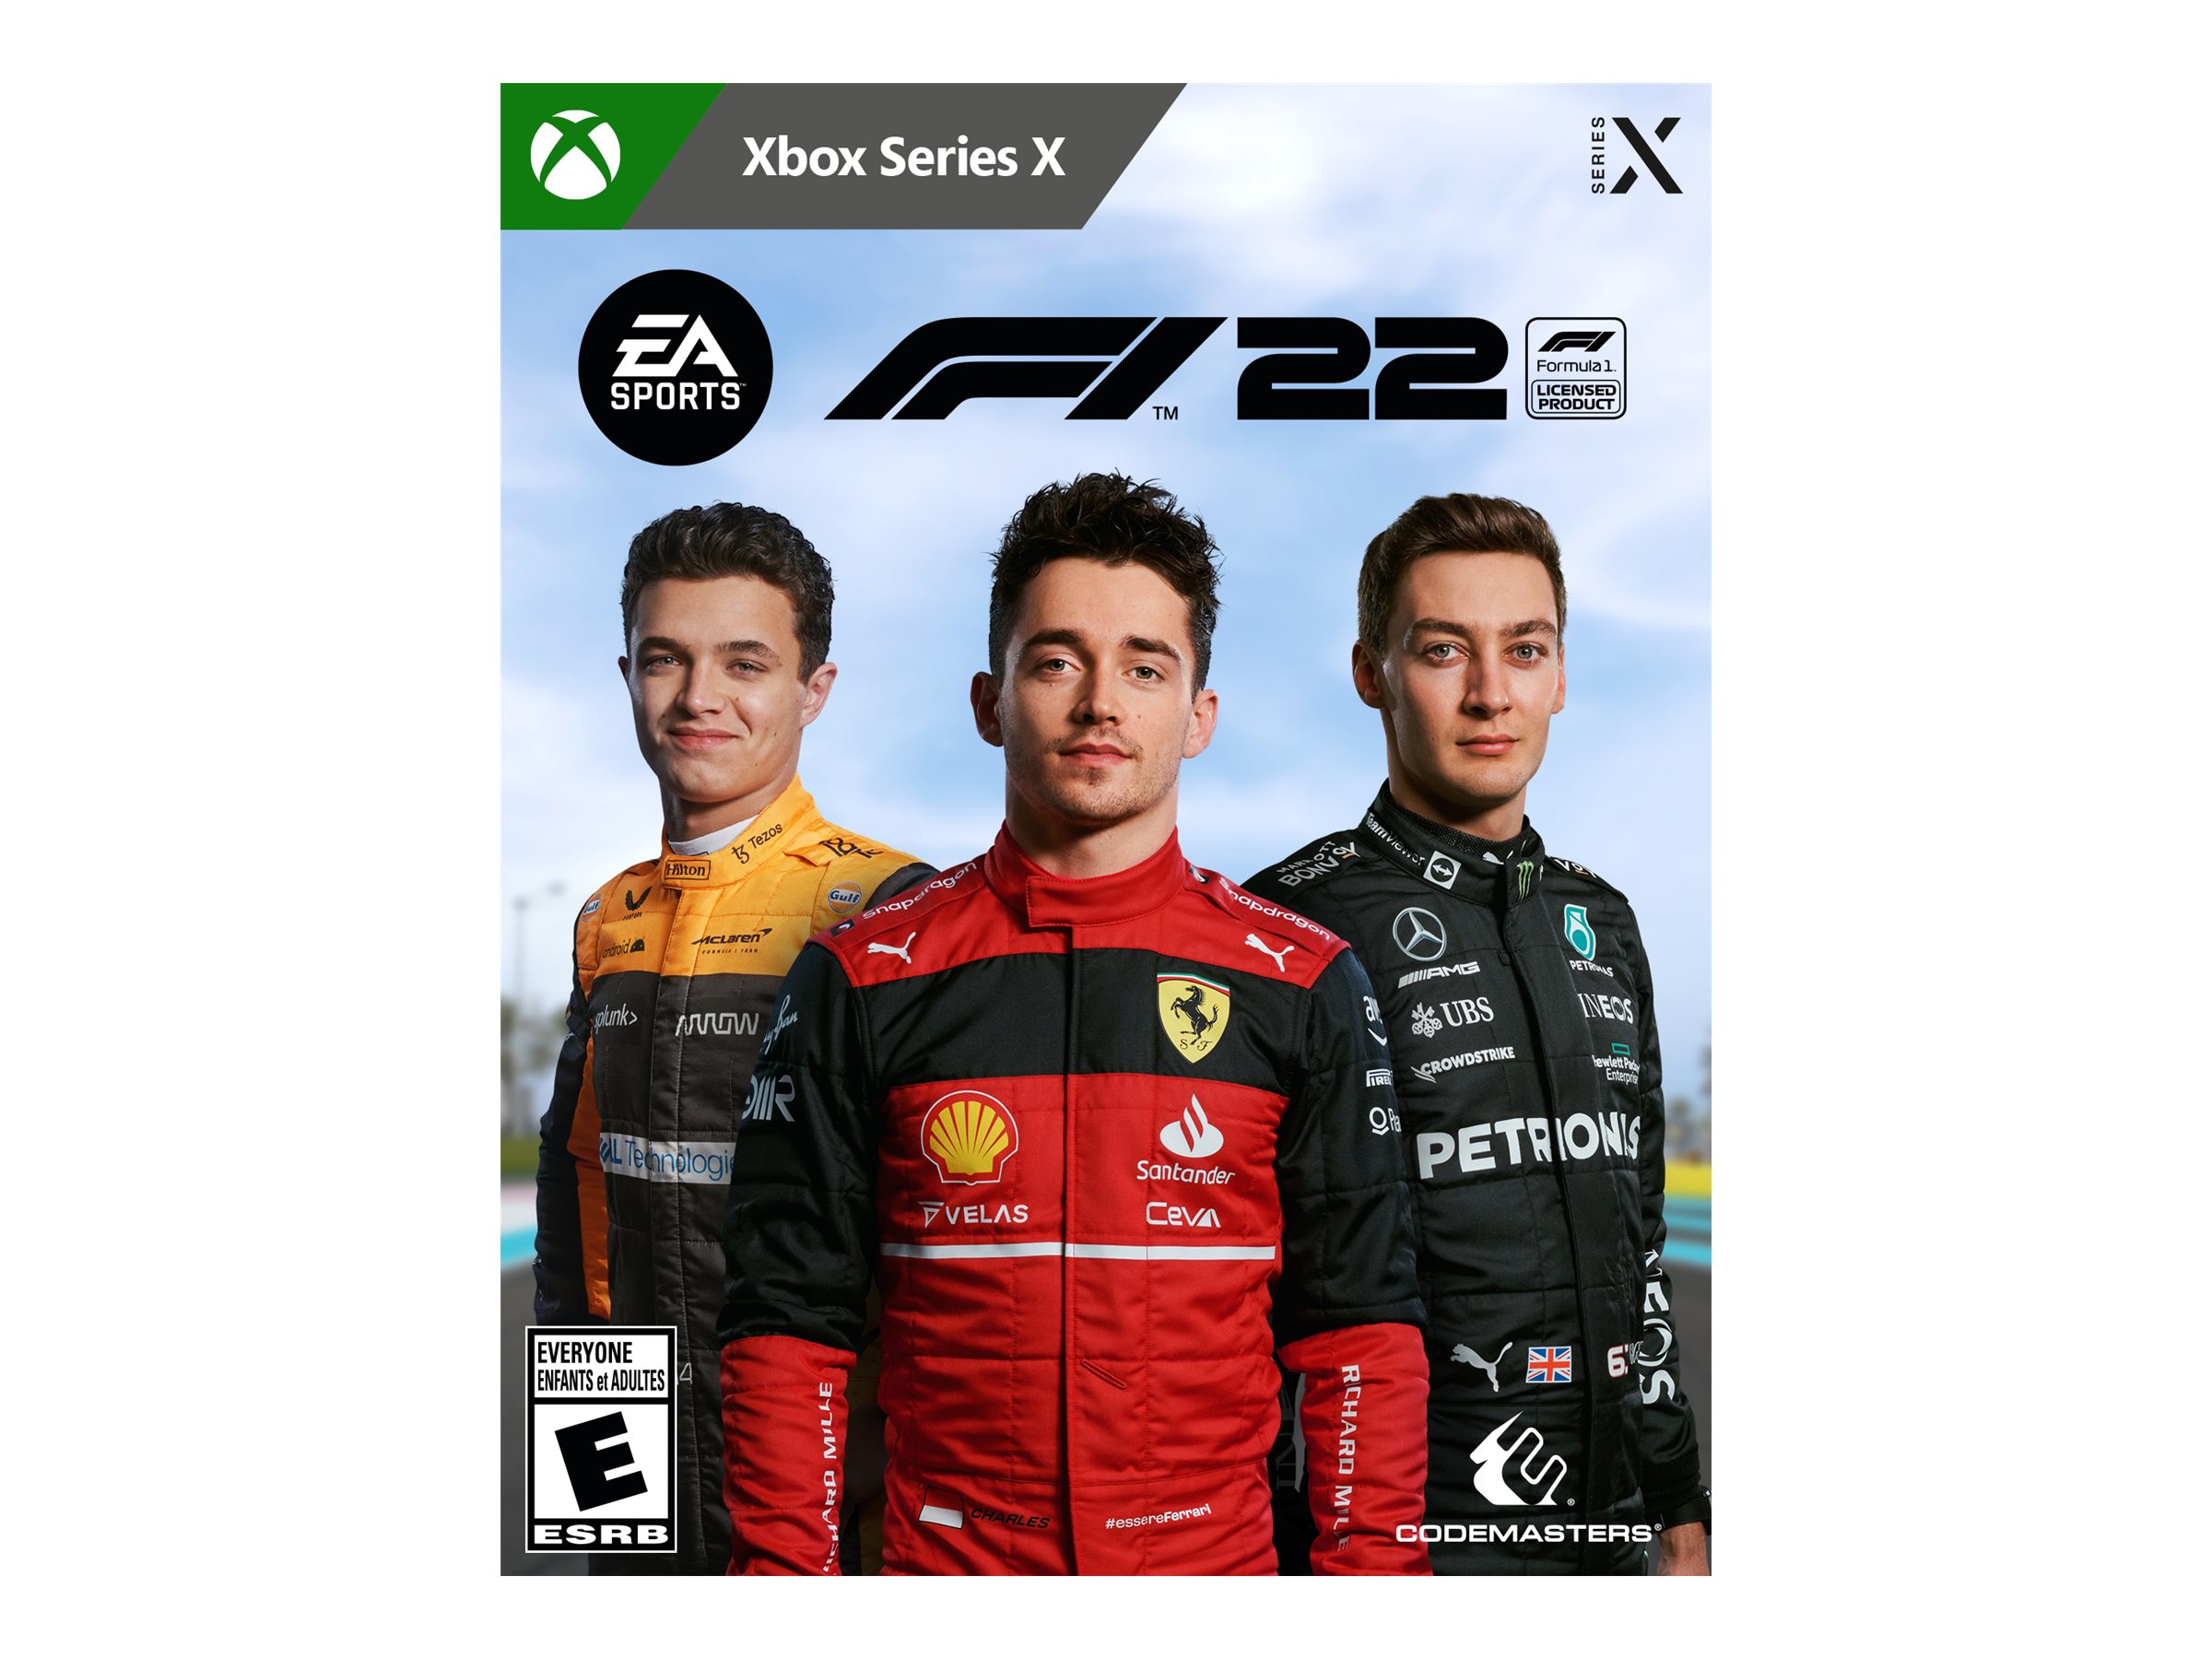 Xbox Series X F1 22